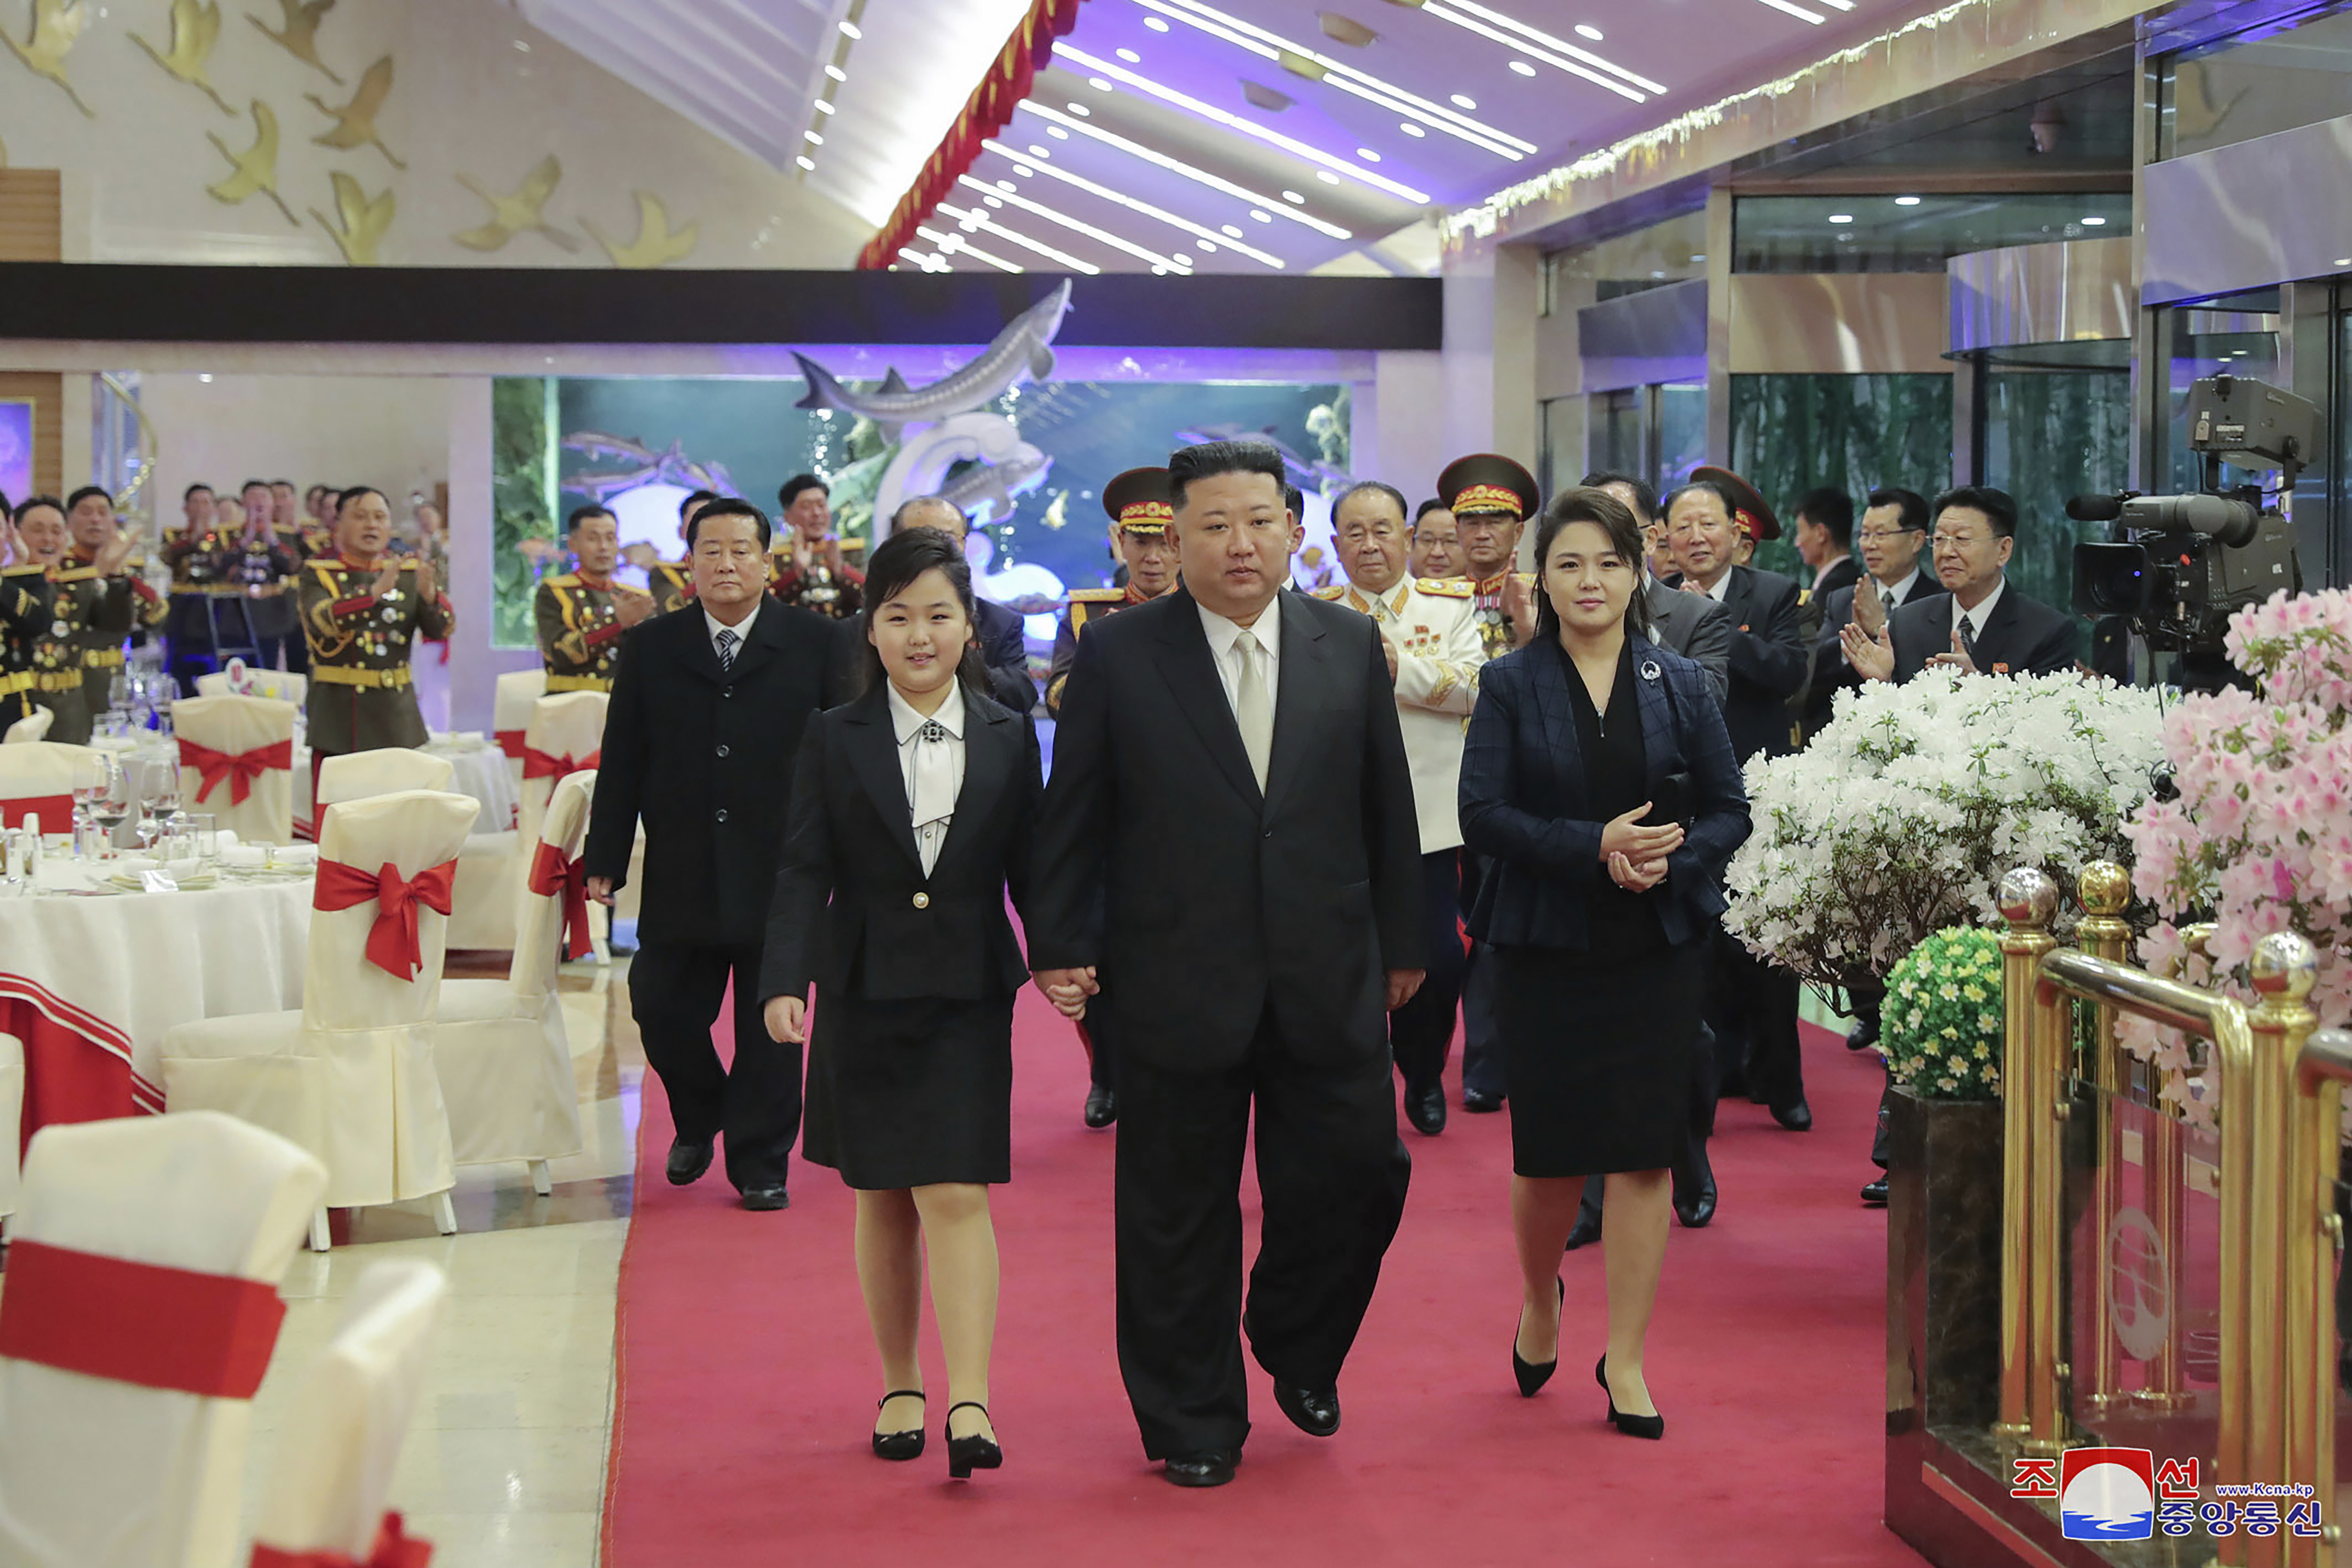 El líder norcoreano Kim Jong Un, centro, con su esposa Ri Sol Ju, derecha, y su hija asisten a una fiesta para conmemorar el 75 aniversario de la fundación del Ejército Popular de Corea en un lugar no especificado en Corea del Norte el martes.